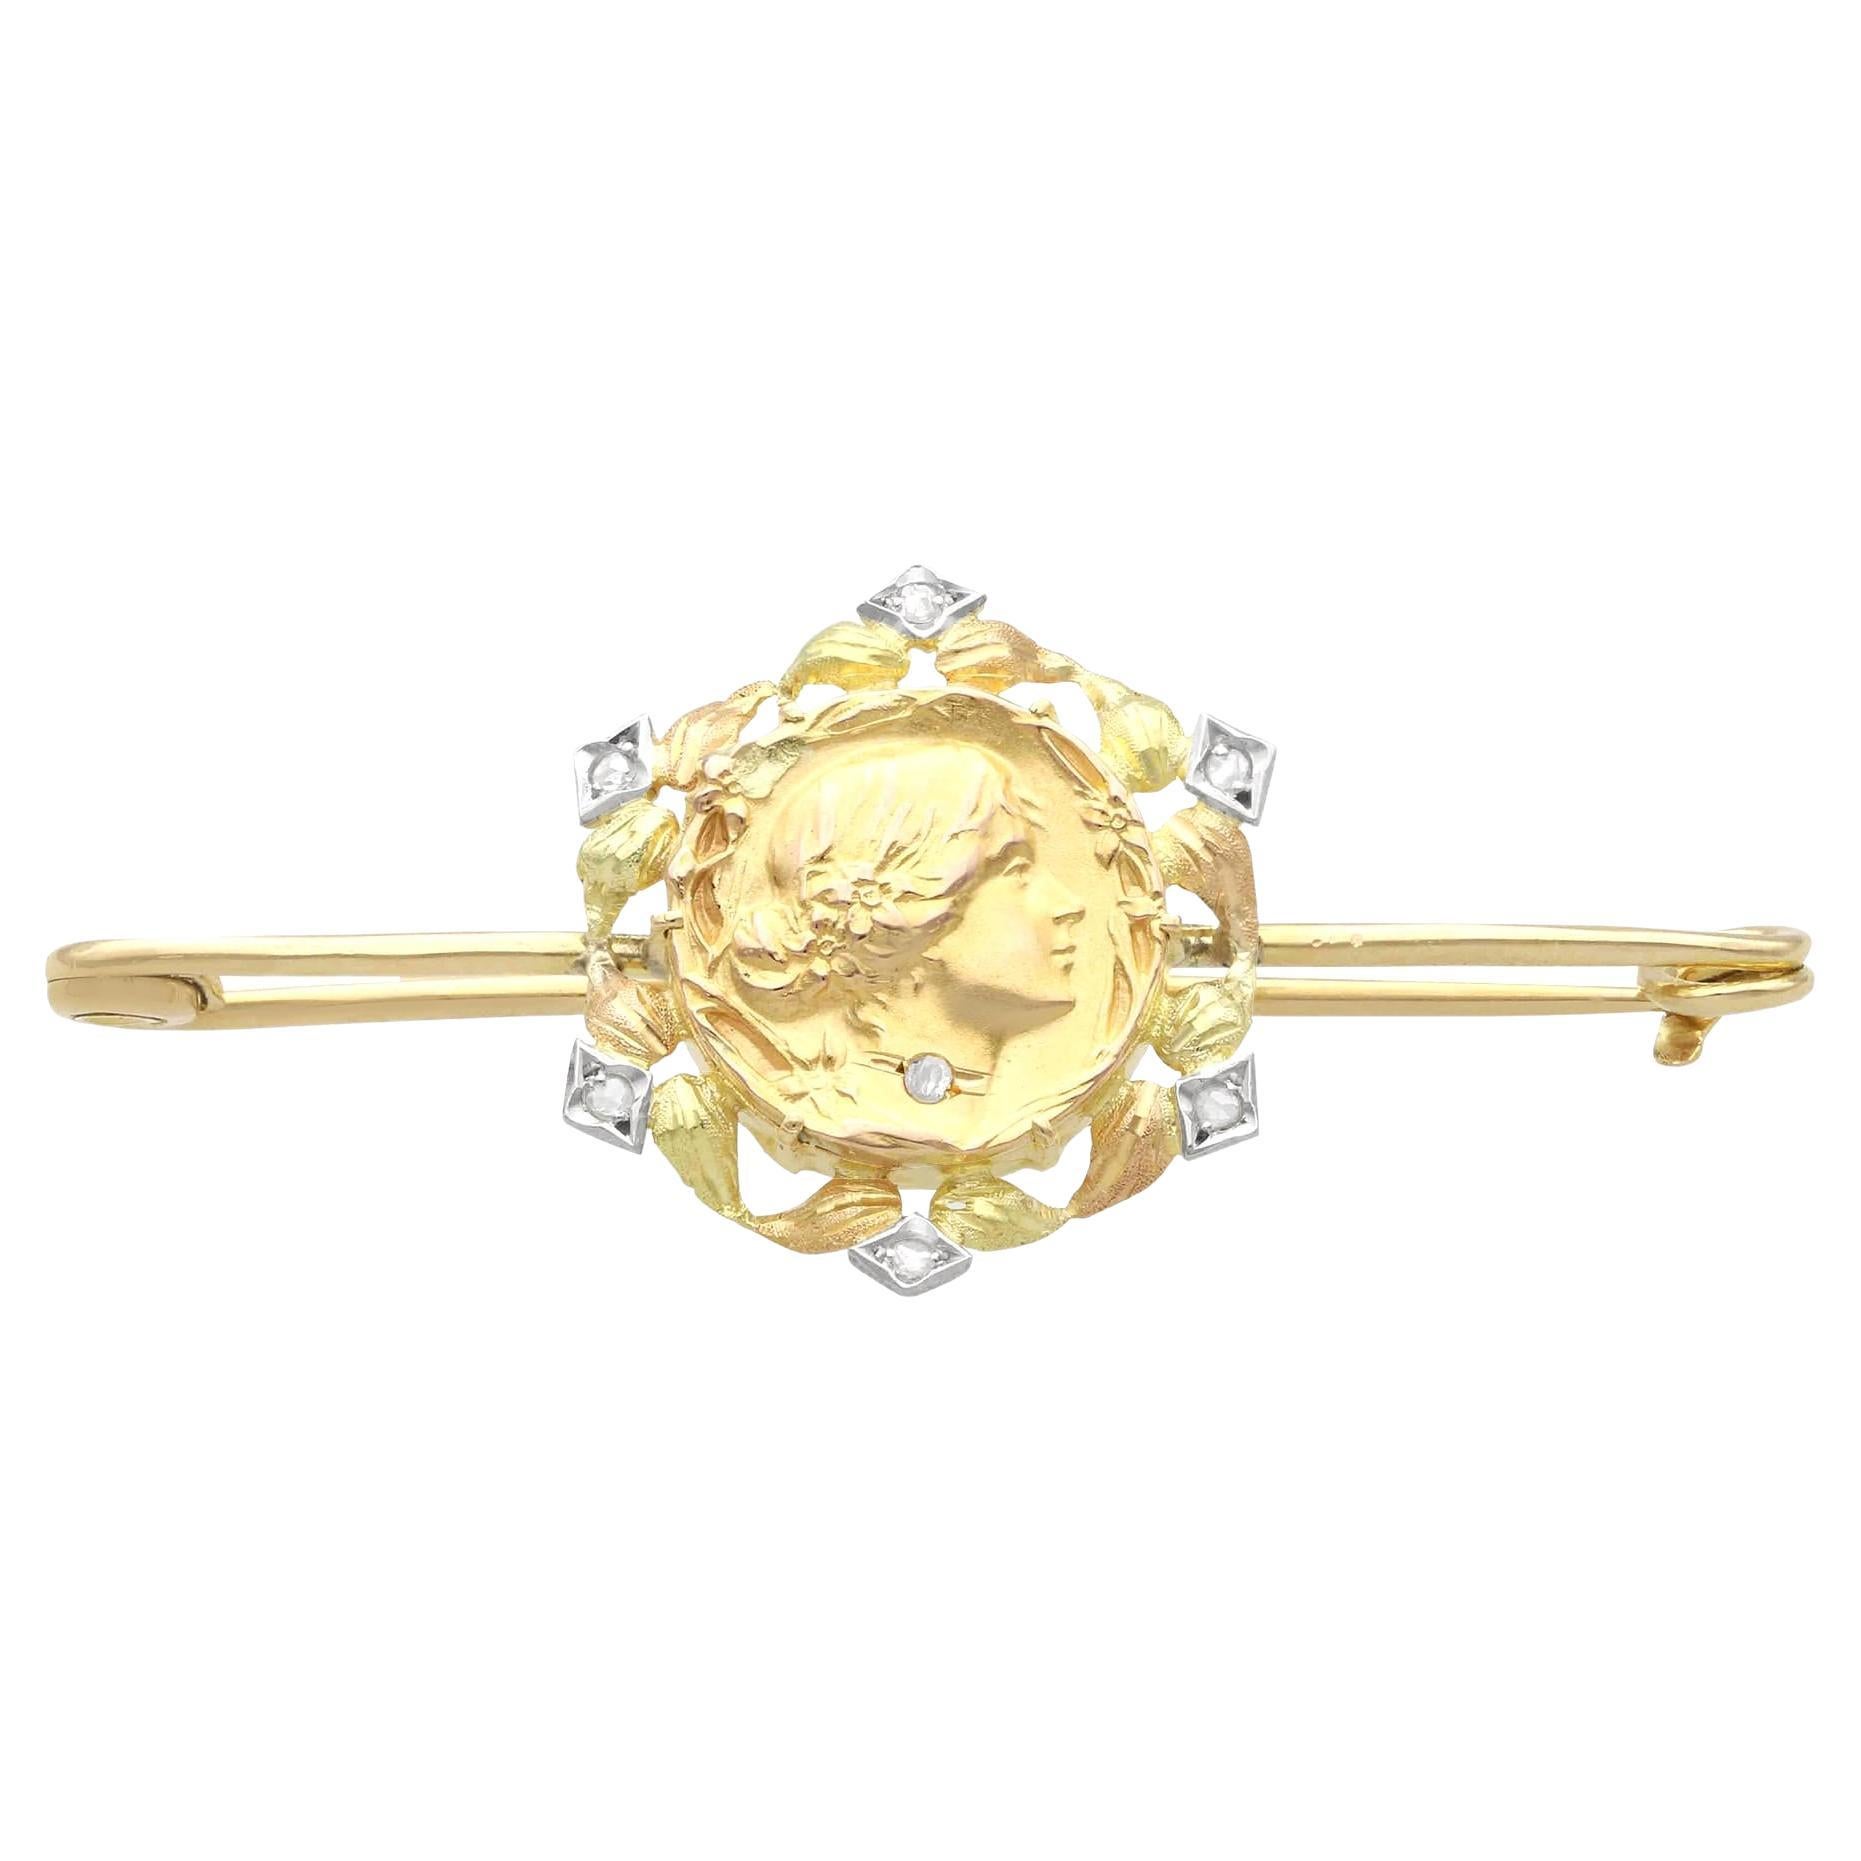 Antike Jugendstil-Barbrosche aus 21 Karat Gelbgold mit 0,13 Karat Diamanten